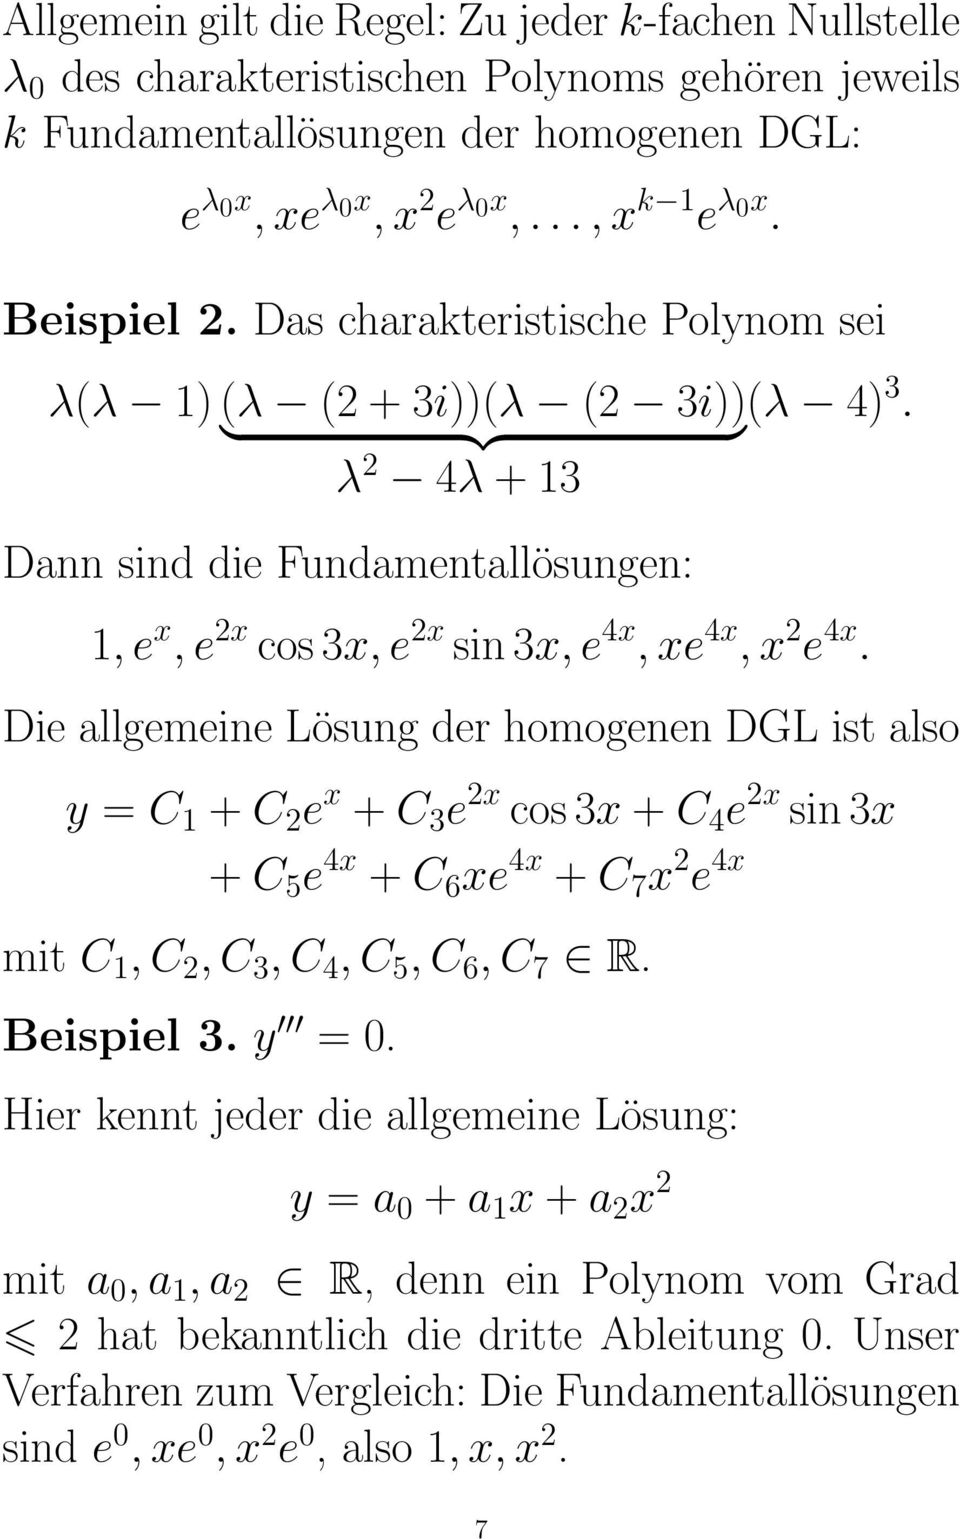 Die allgemeine Lösung der homogenen DGL ist also y = C 1 + C 2 e x + C 3 e 2x cos 3x + C 4 e 2x sin 3x + C 5 e 4x + C 6 xe 4x + C 7 x 2 e 4x mit C 1, C 2, C 3, C 4, C 5, C 6, C 7 R. Beispiel 3. y = 0.